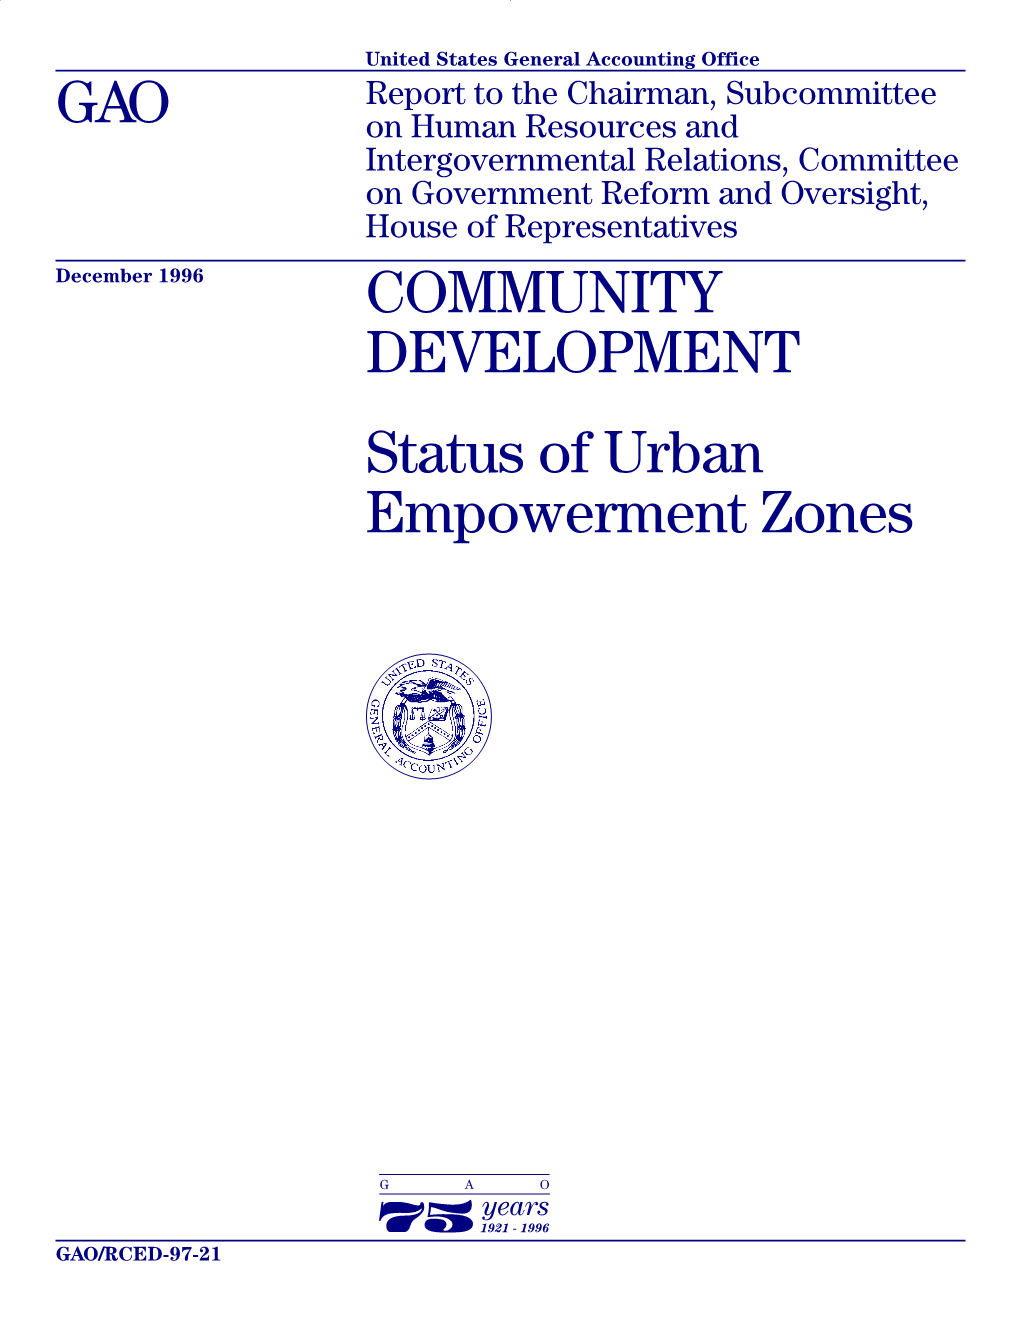 COMMUNITY DEVELOPMENT: Status of Urban Empowerment Zones